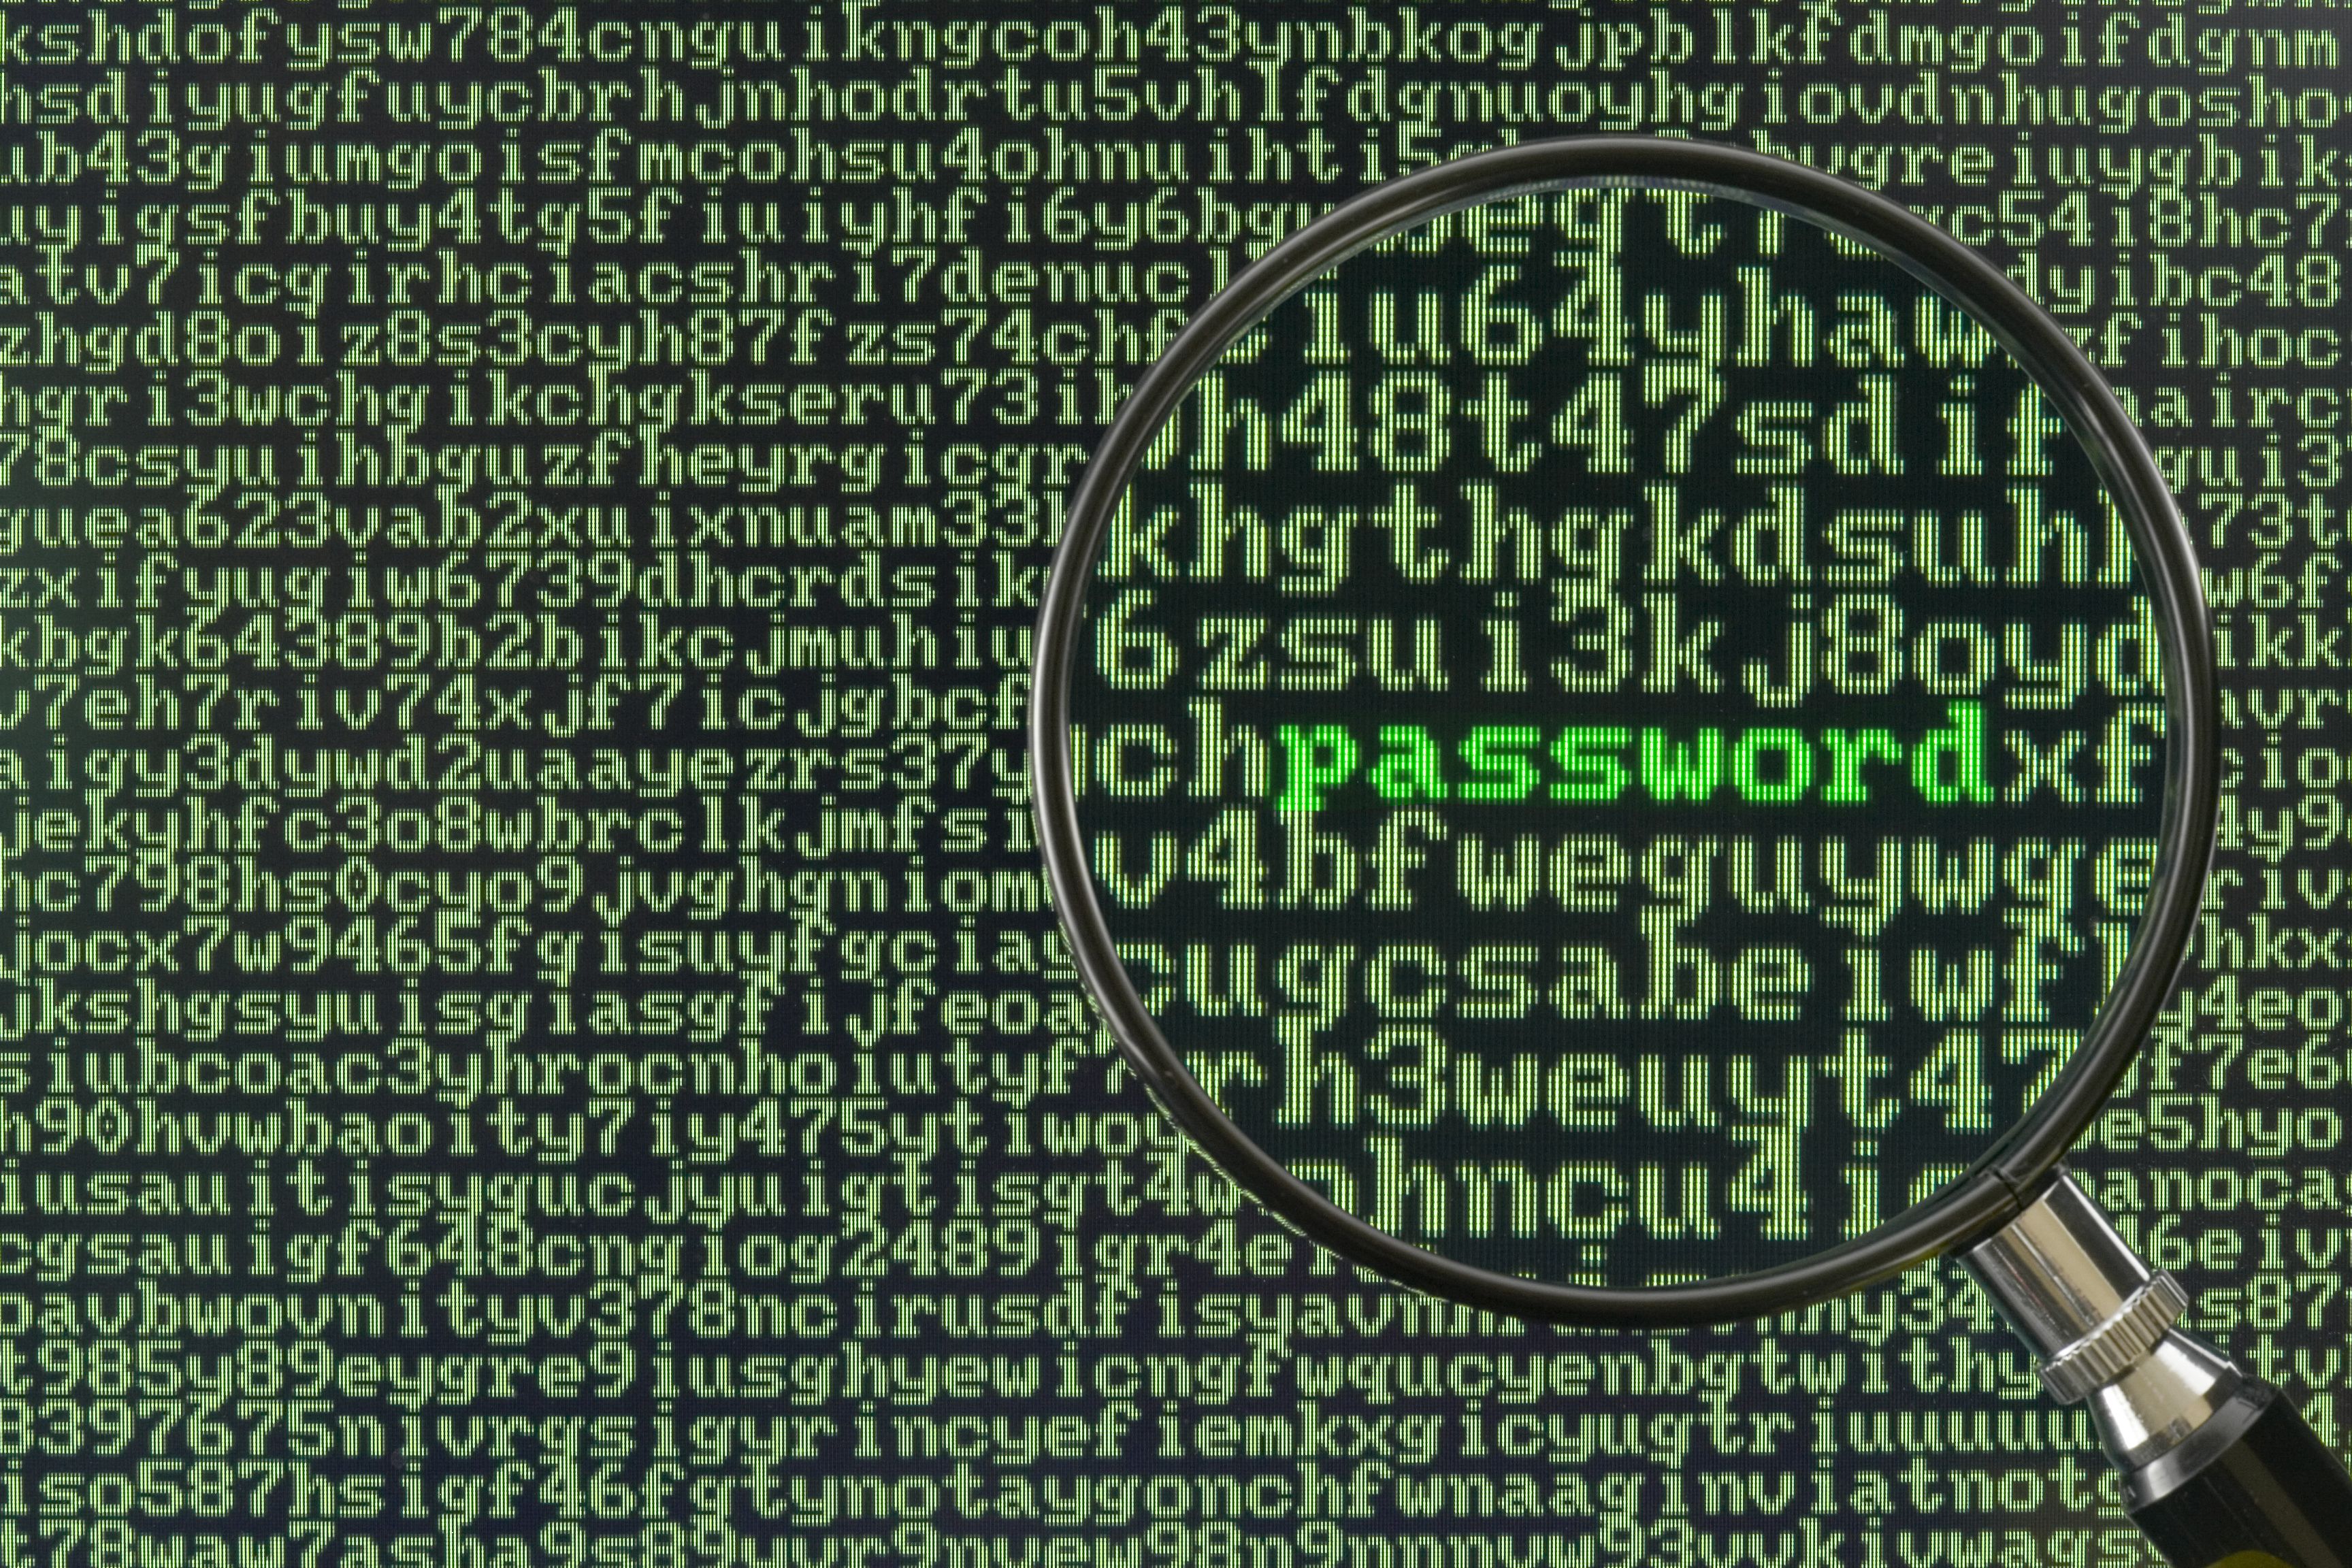 Le passwordless : une sécurité renforcée ?